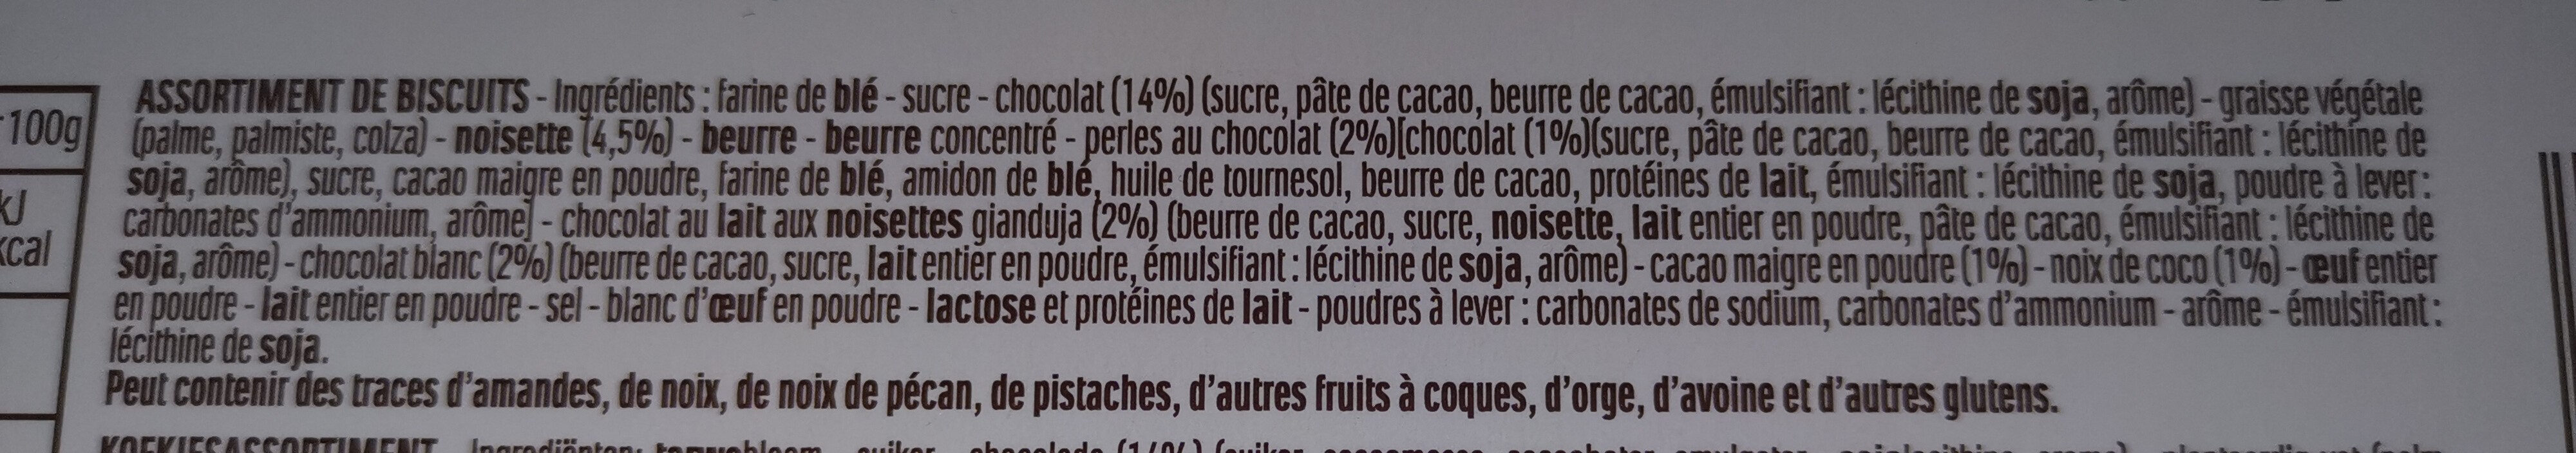 Étoile - Ingredients - fr